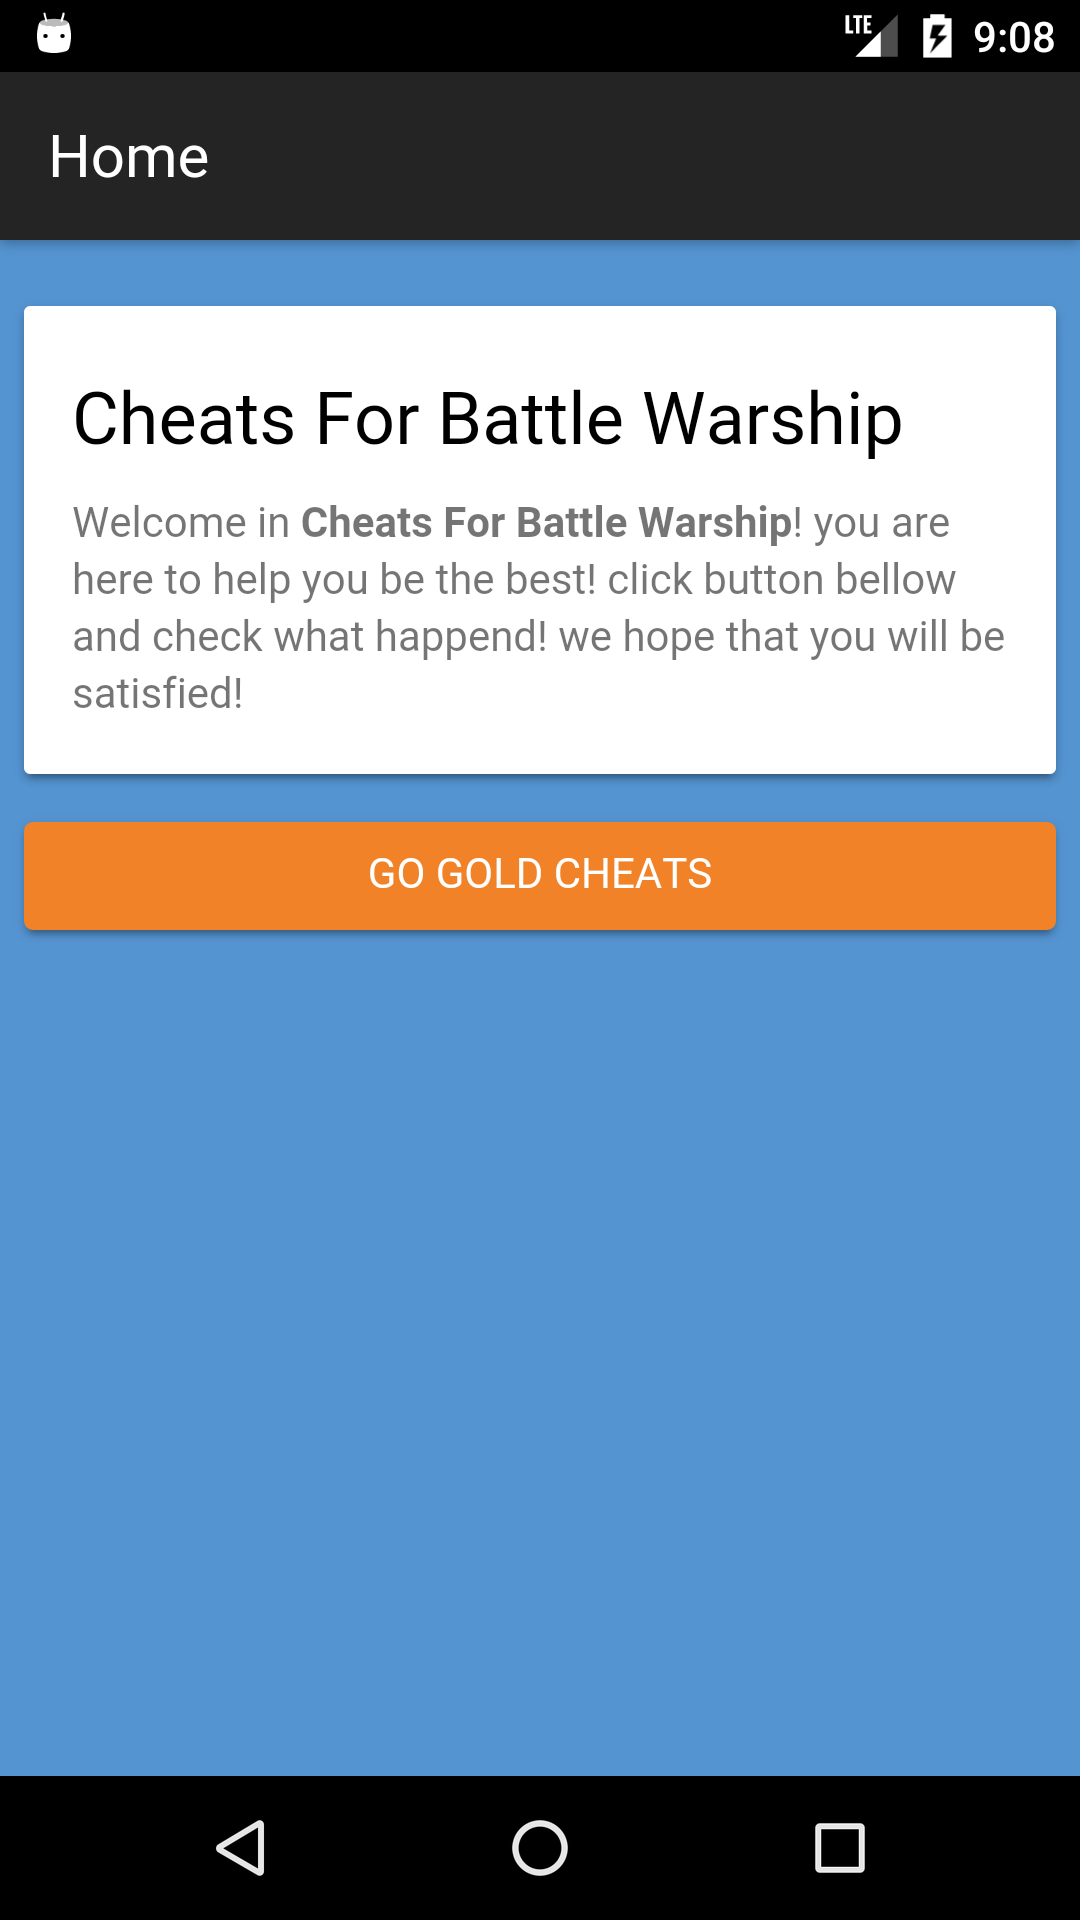 Cheats For Battle Warship fÃ¼r Android - APK herunterladen - 